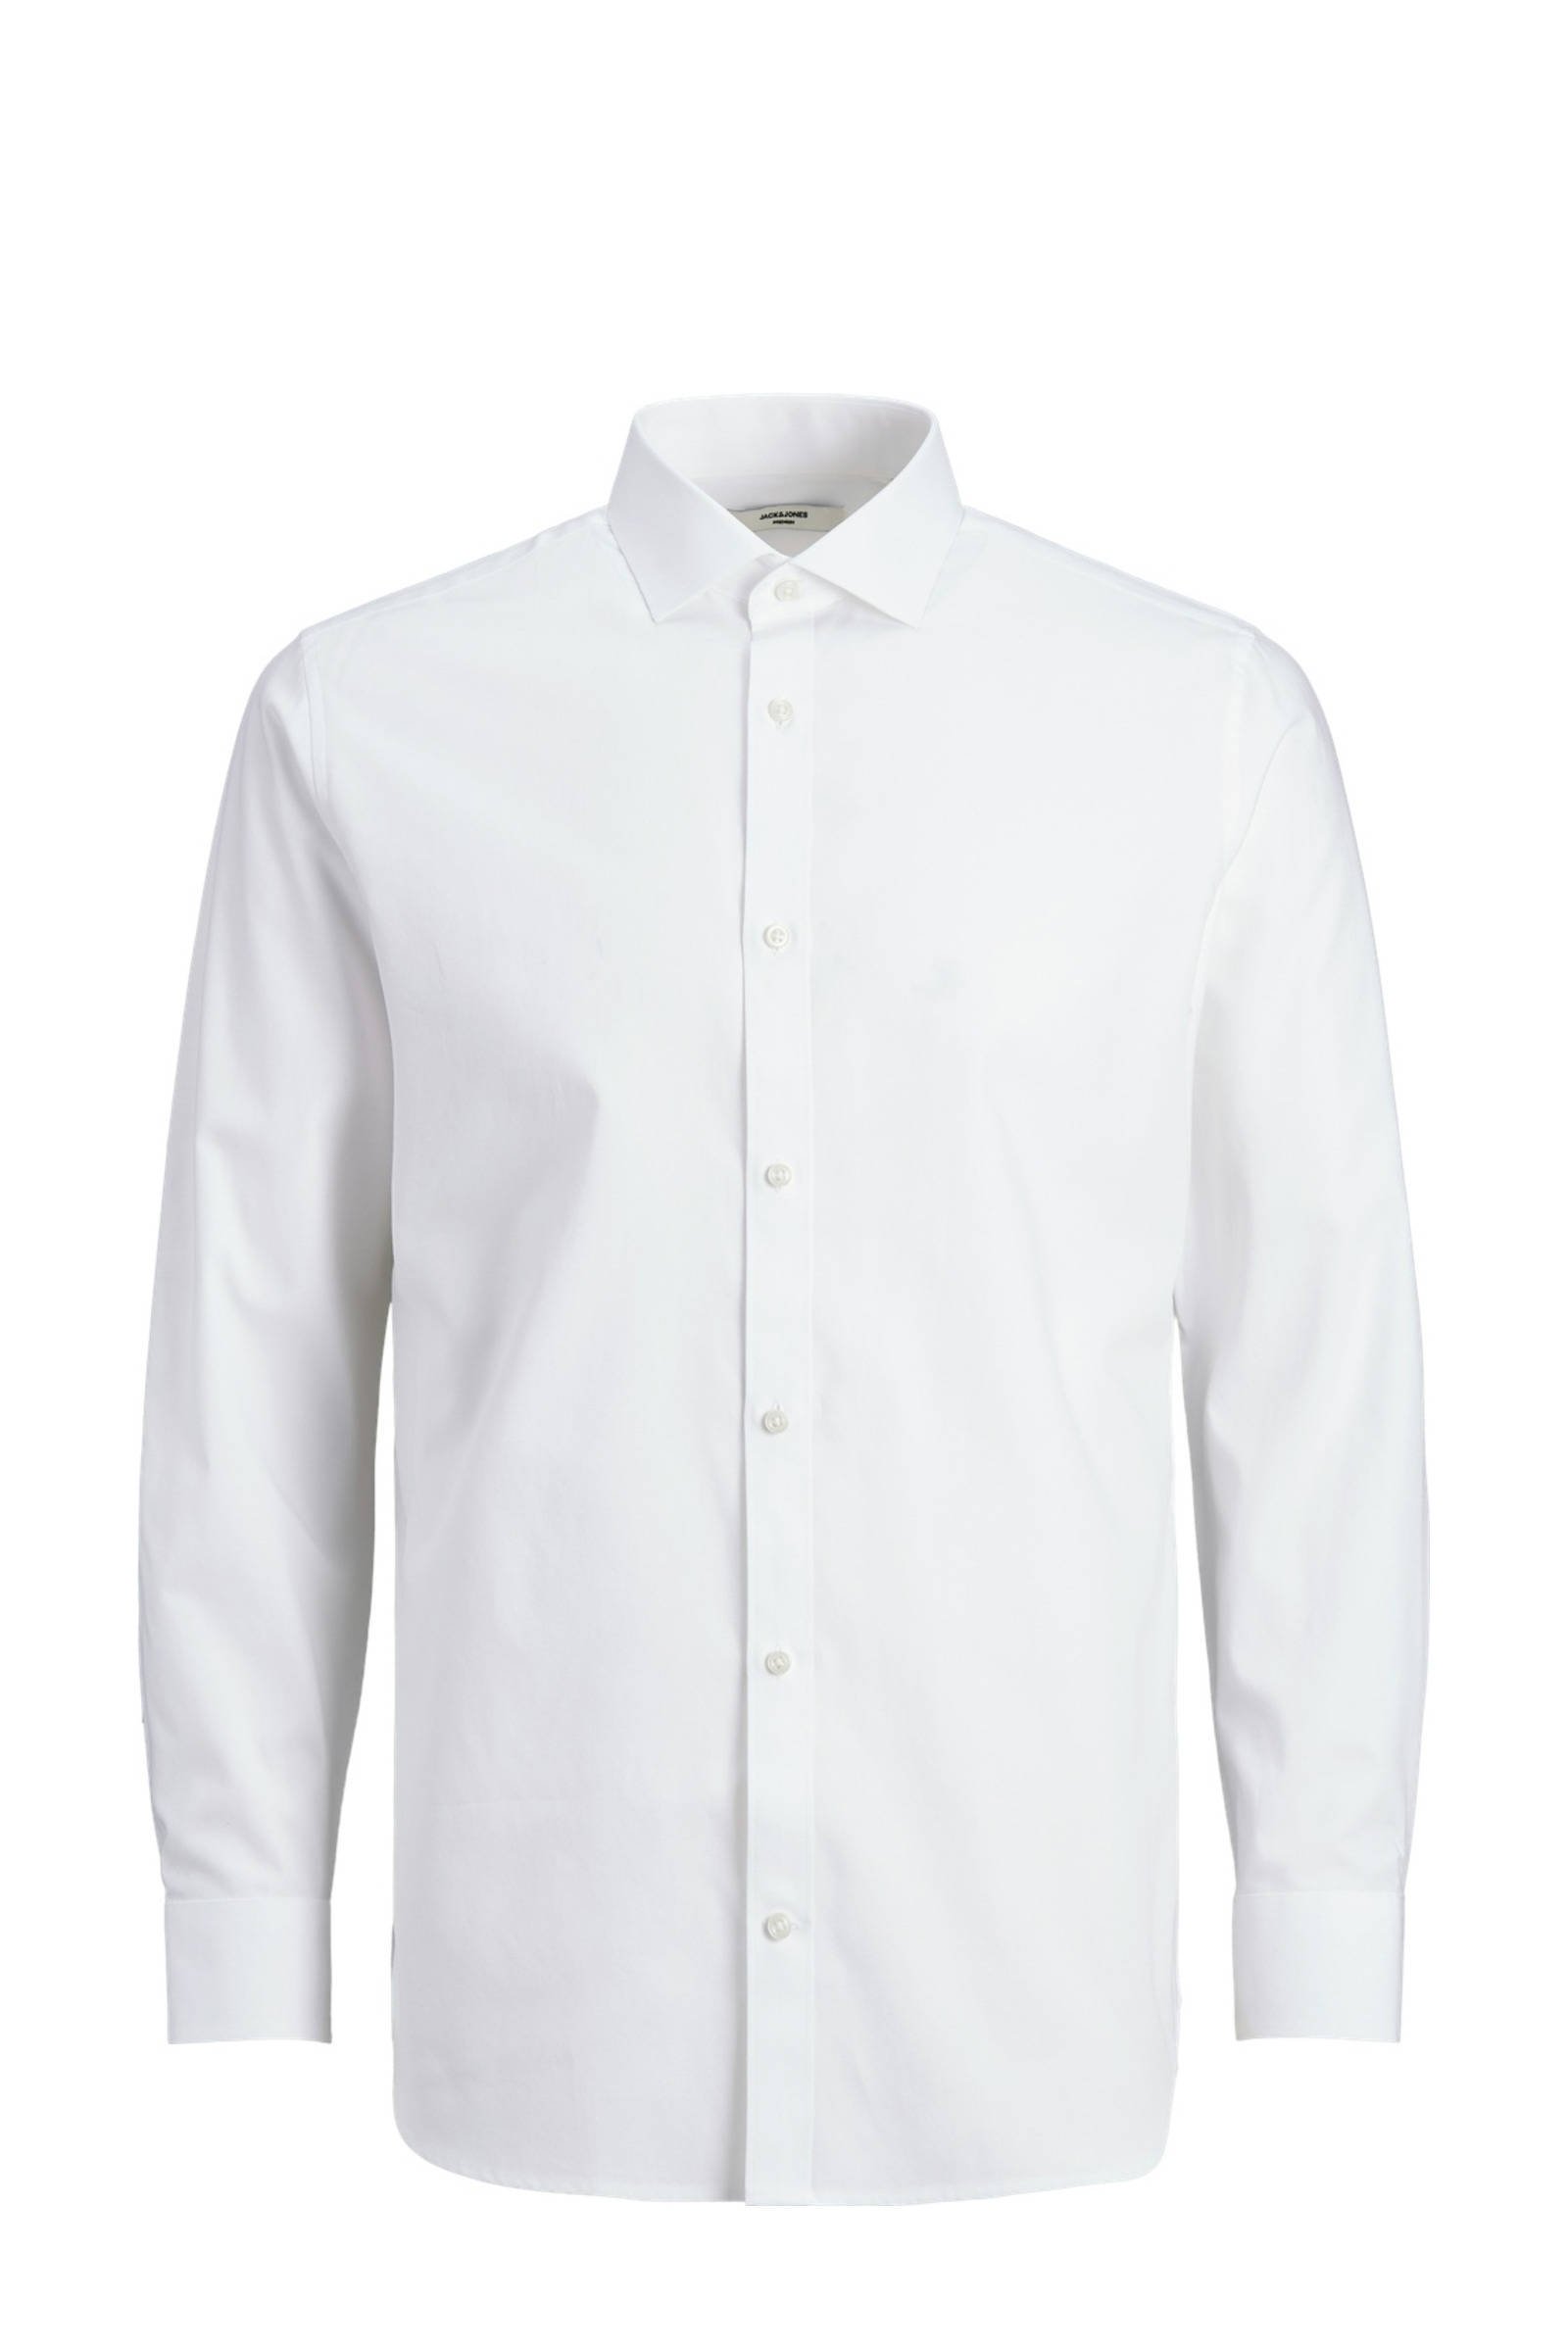 JACK & JONES PREMIUM slim fit overhemd JPRBLAROYAL van biologisch katoen wit online kopen